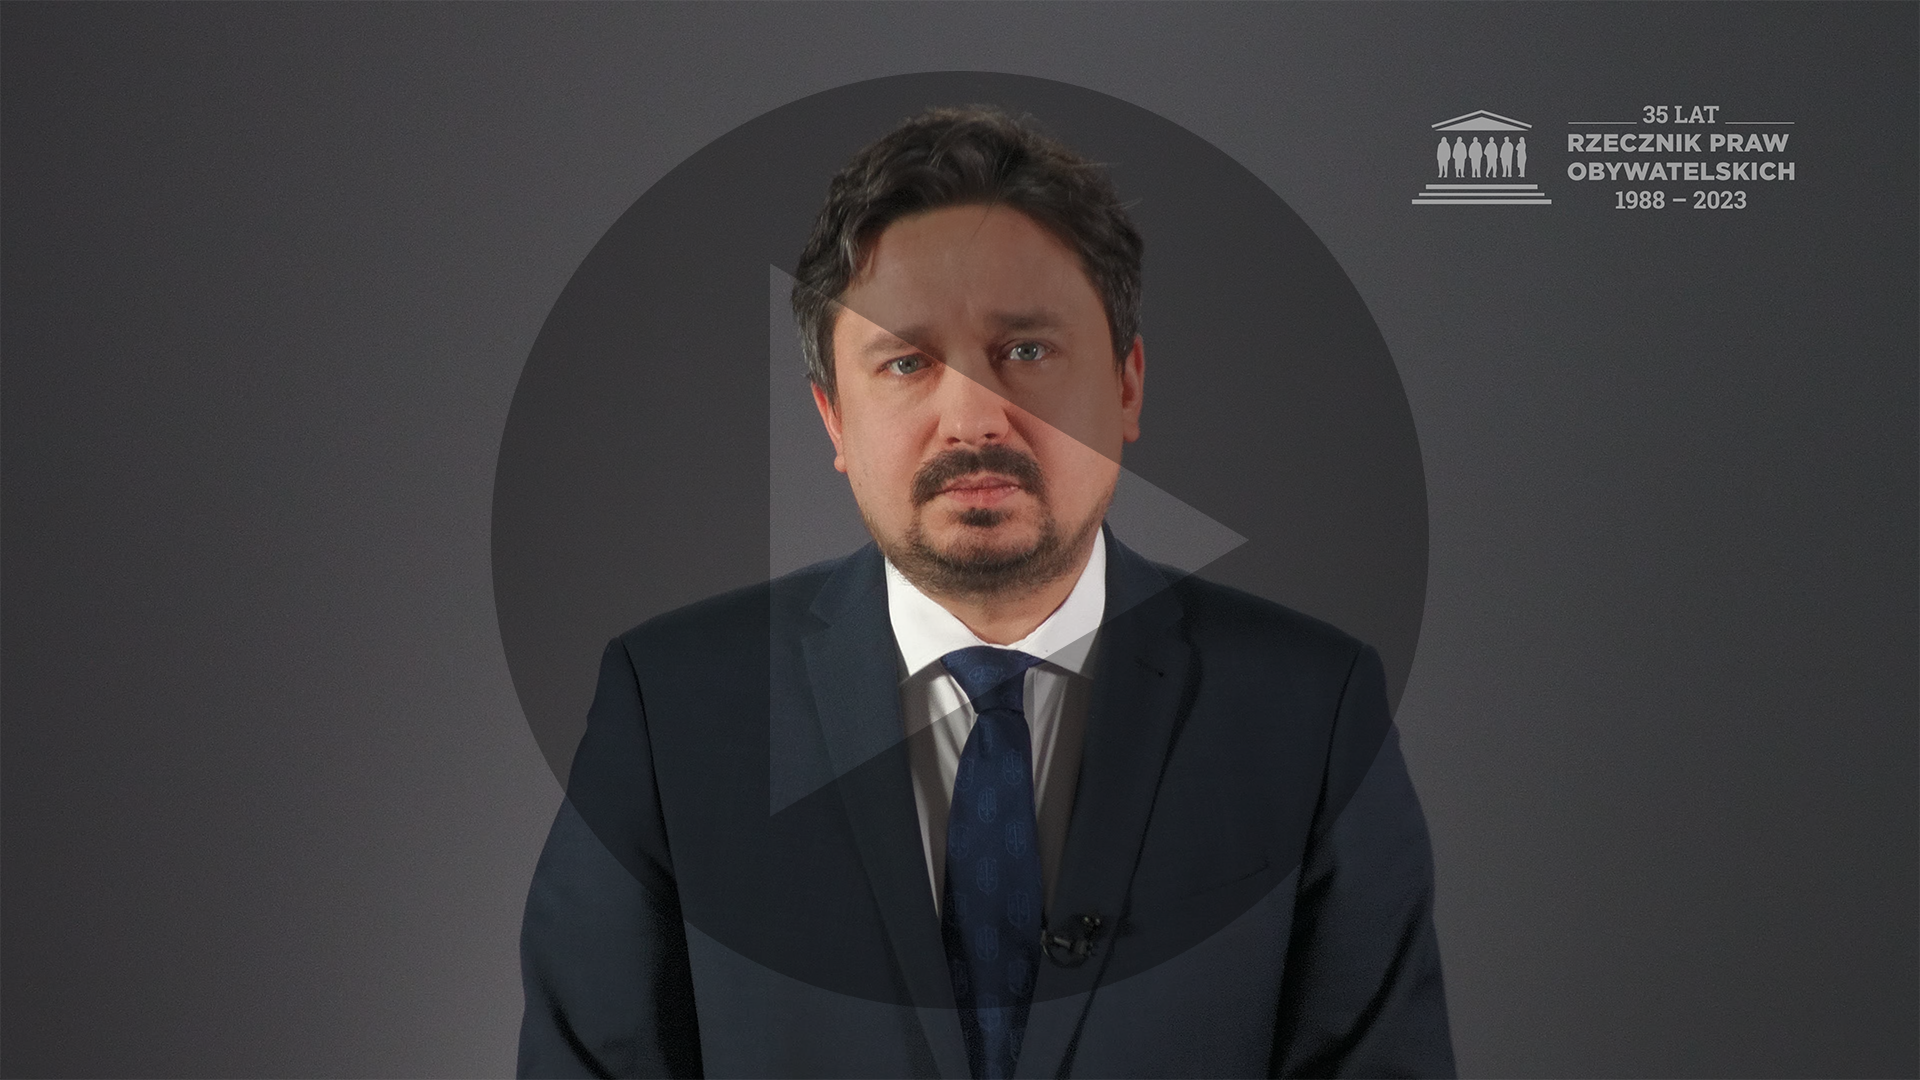 Kadr z nagrania RPO Marcina Wiącka z widocznym przyciskiem odtwarzania wideo